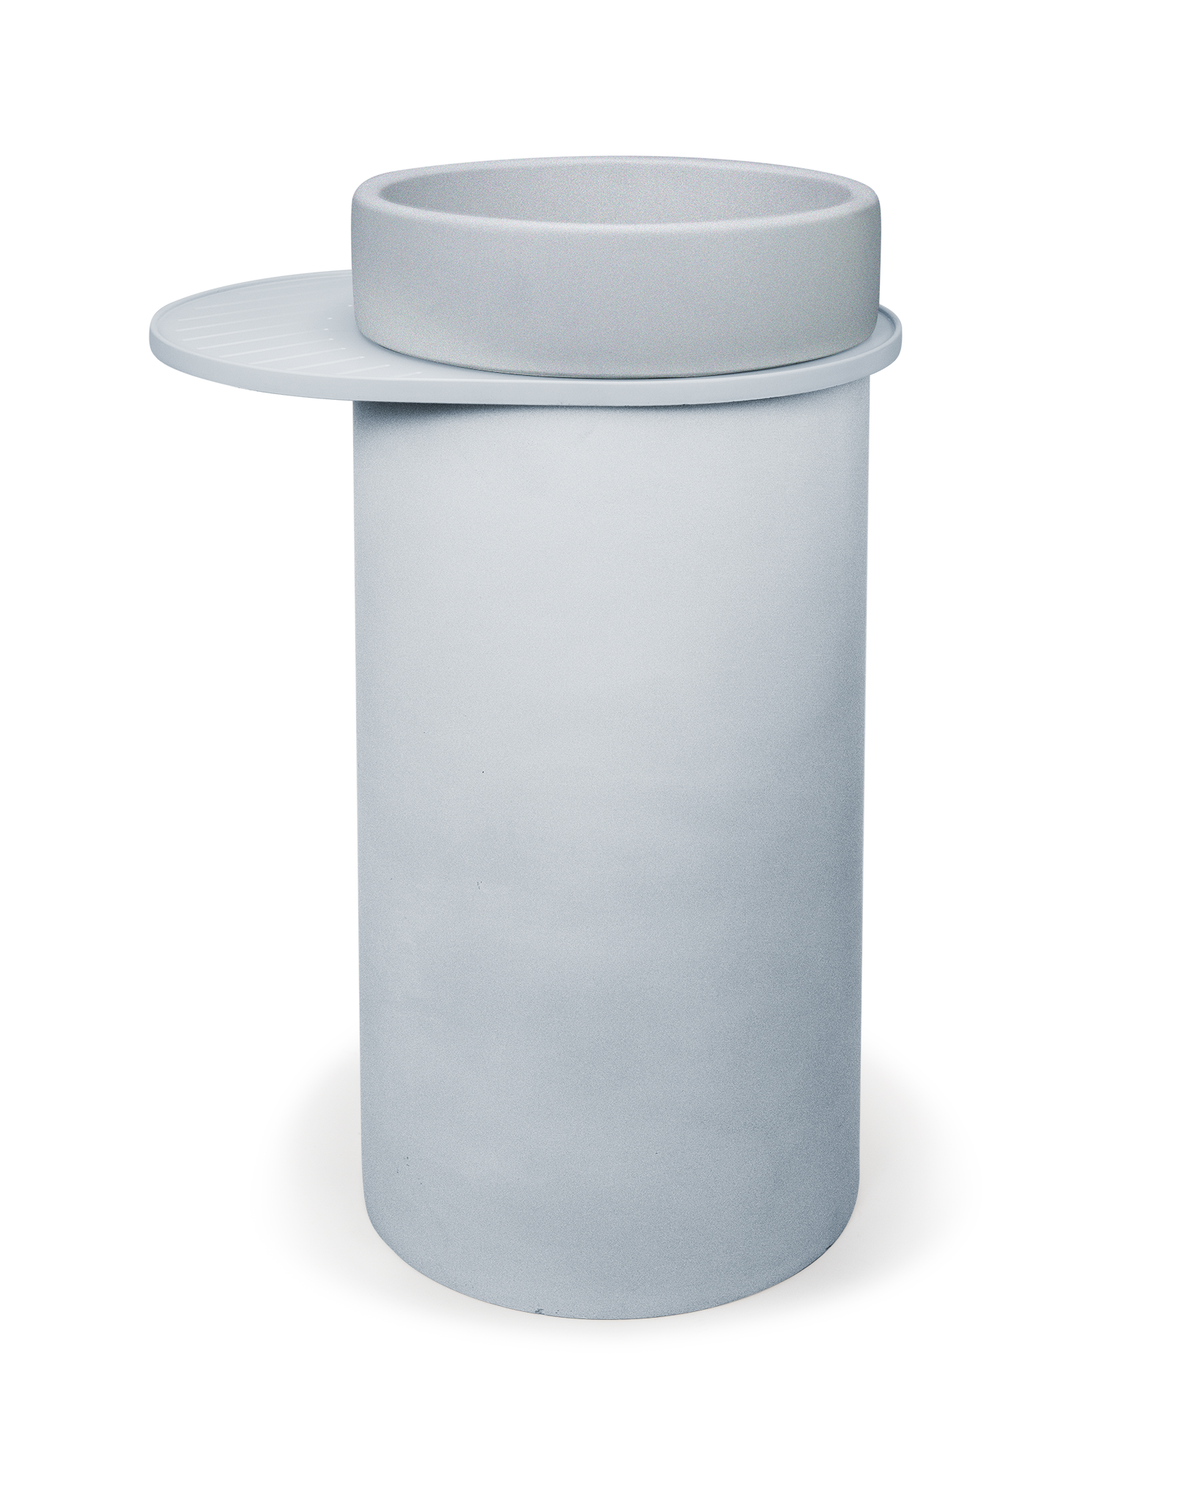 Cylinder - Bowl Basin (Powder Blue)